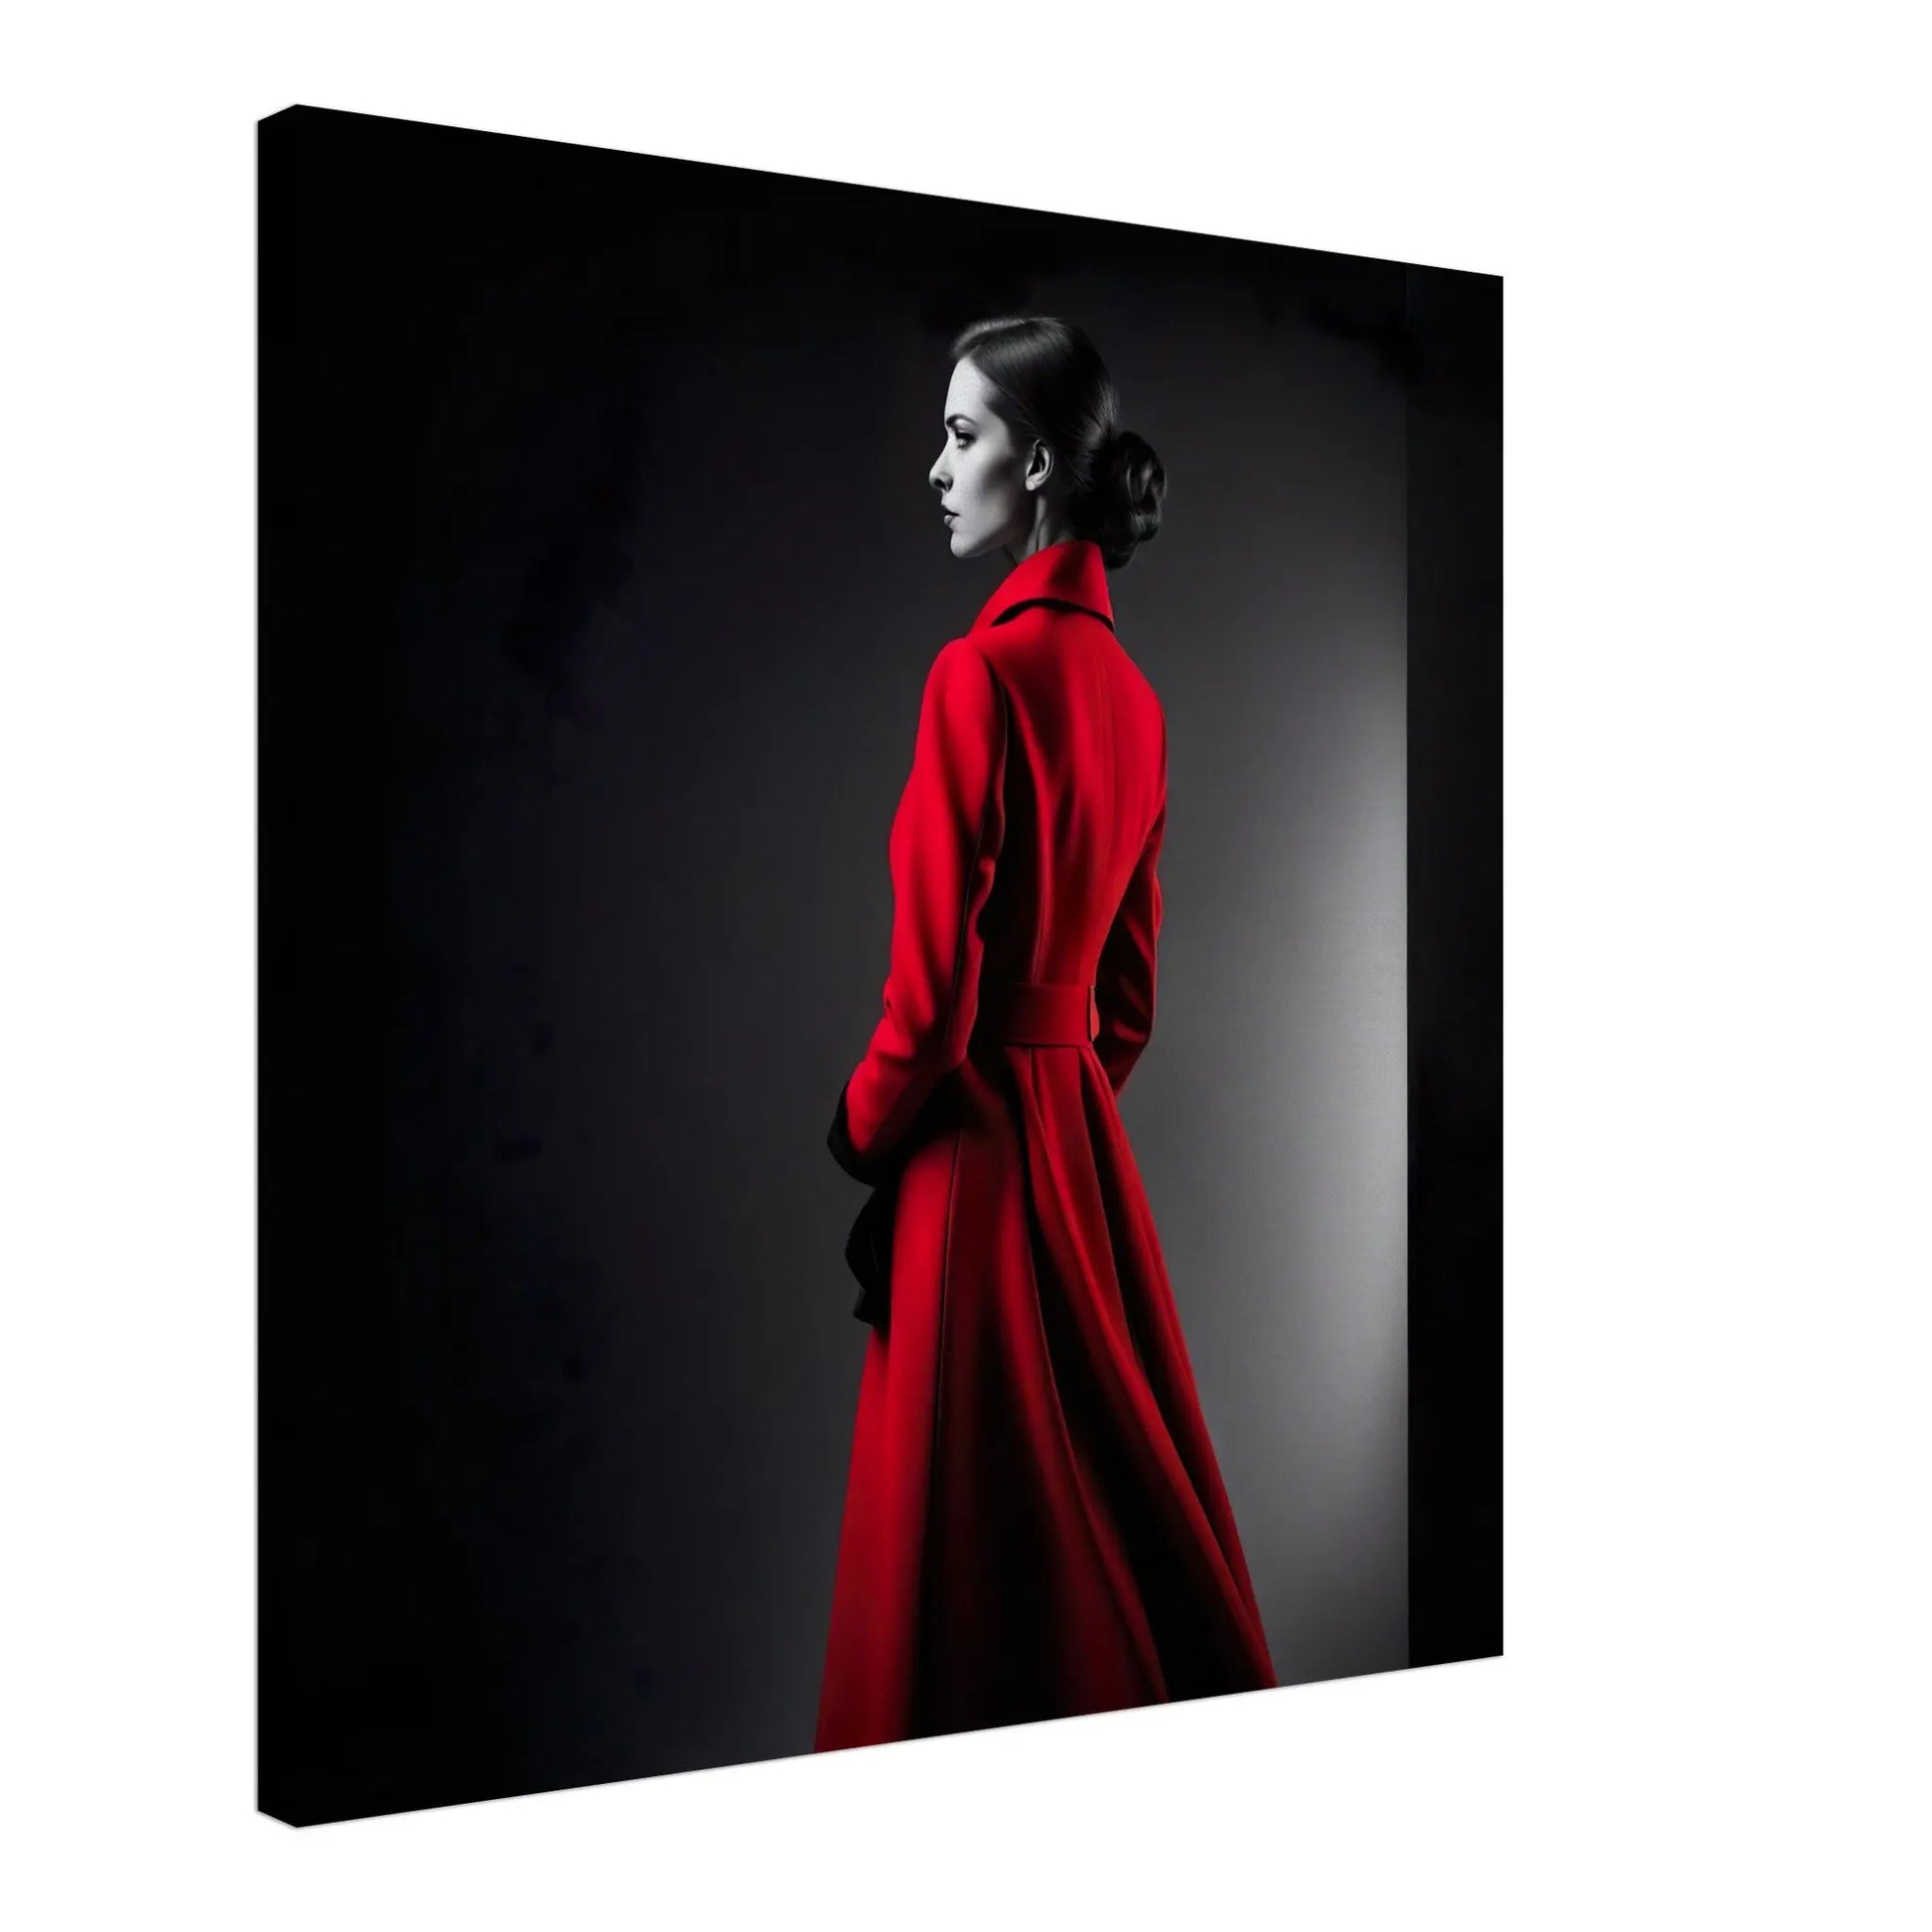 Leinwandbild - Frau im roten Mantel - Schwarz-Weiß Stil, KI-Kunst - RolConArt, Schwarz-Weiß mit Akzentfarben, 